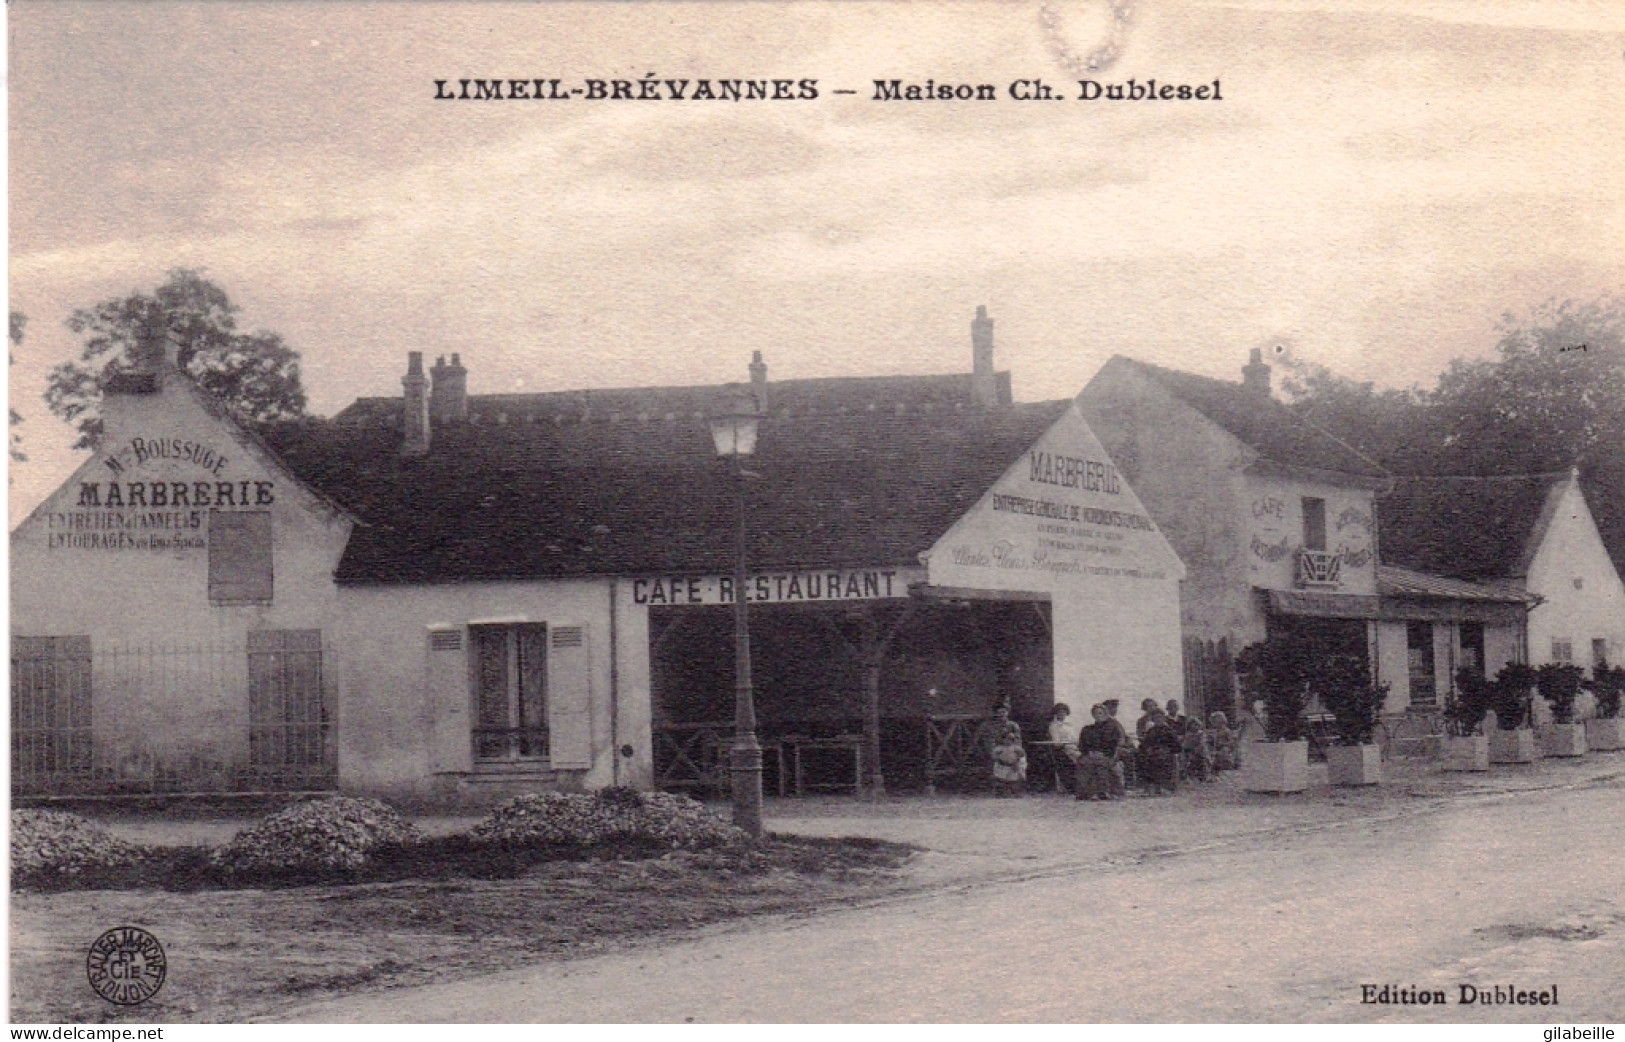 94 - Val De Marne - LIMEIL BREVANNES - Avenue De La Gare - Café Restaurant Marbrerie - Maison Dublesel - Limeil Brevannes